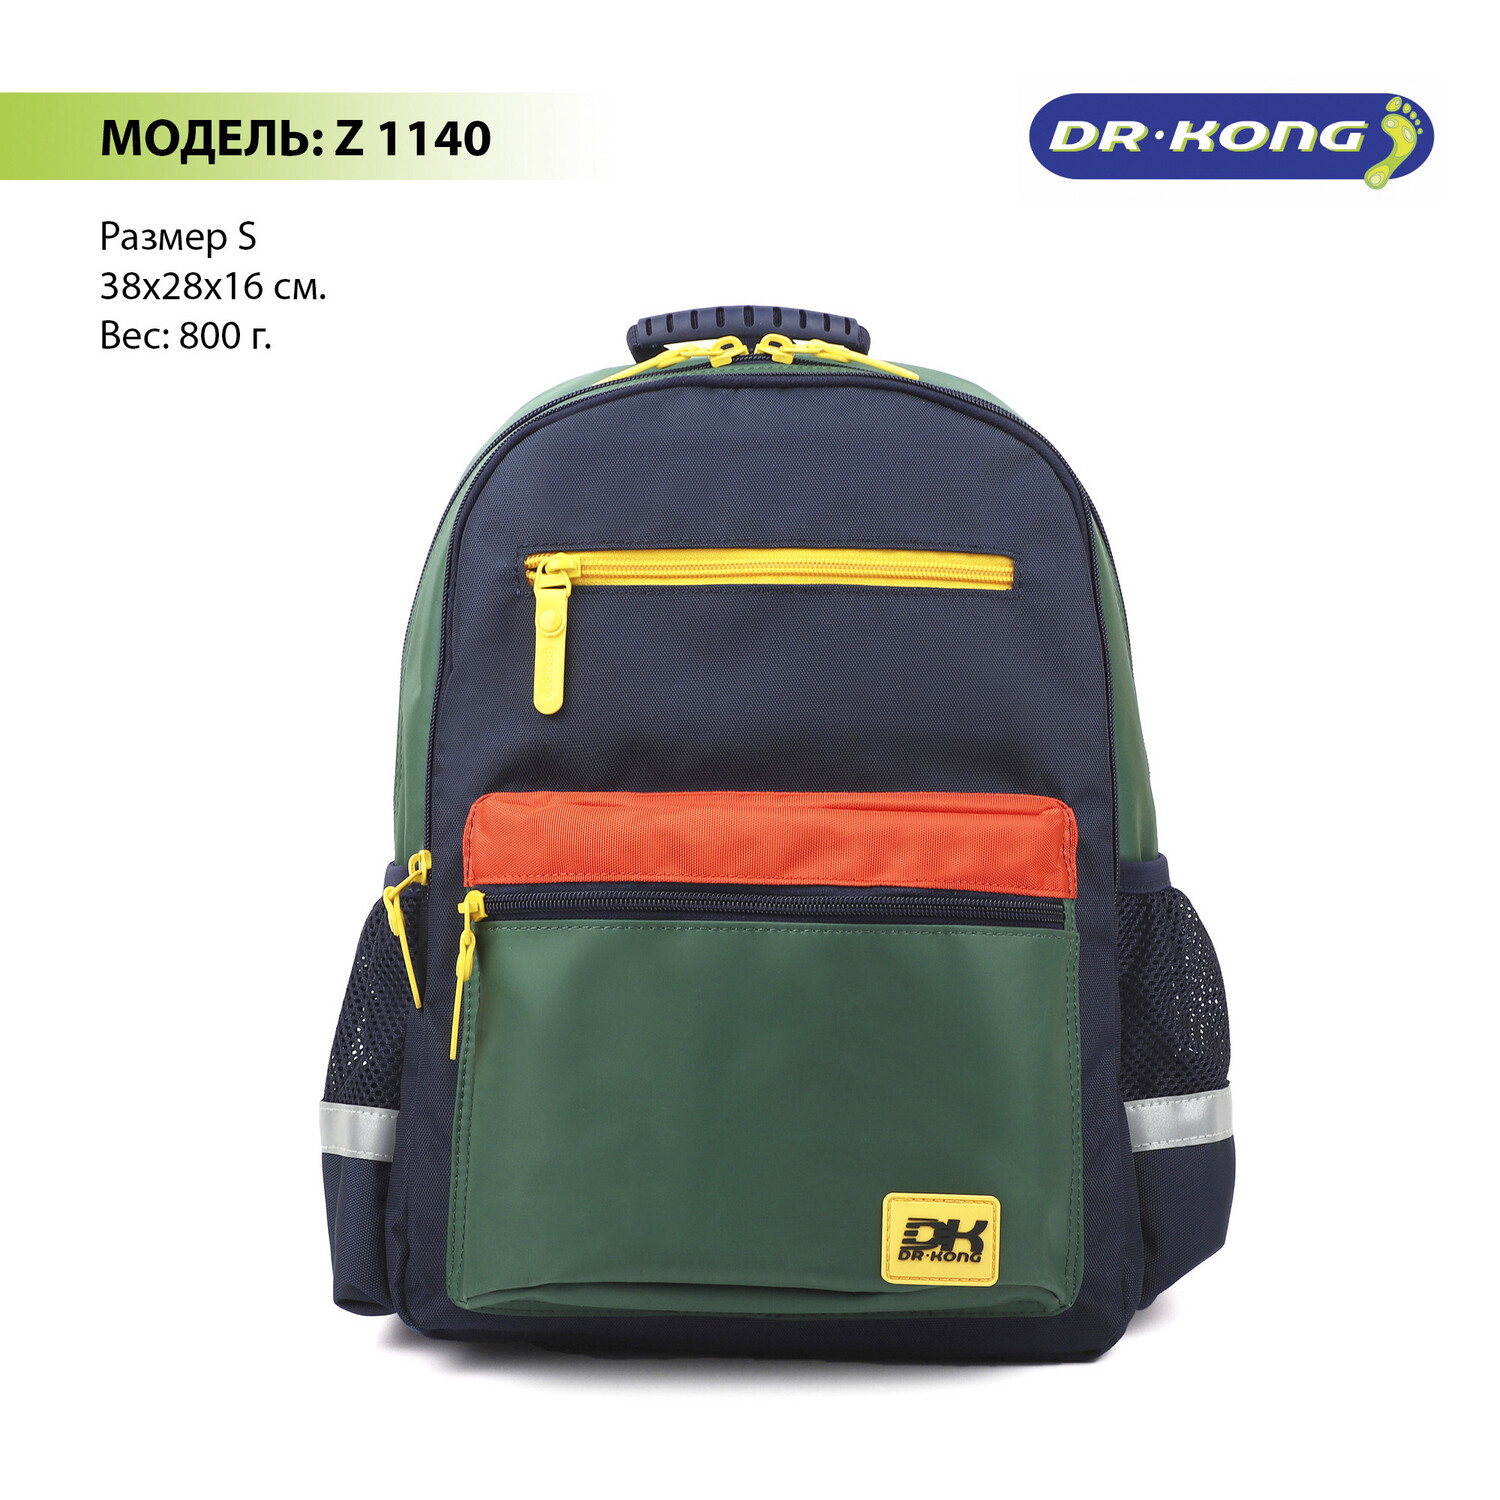 Школьный рюкзак DR.KONG Z 1140 для мальчиков на рост 110-130 см